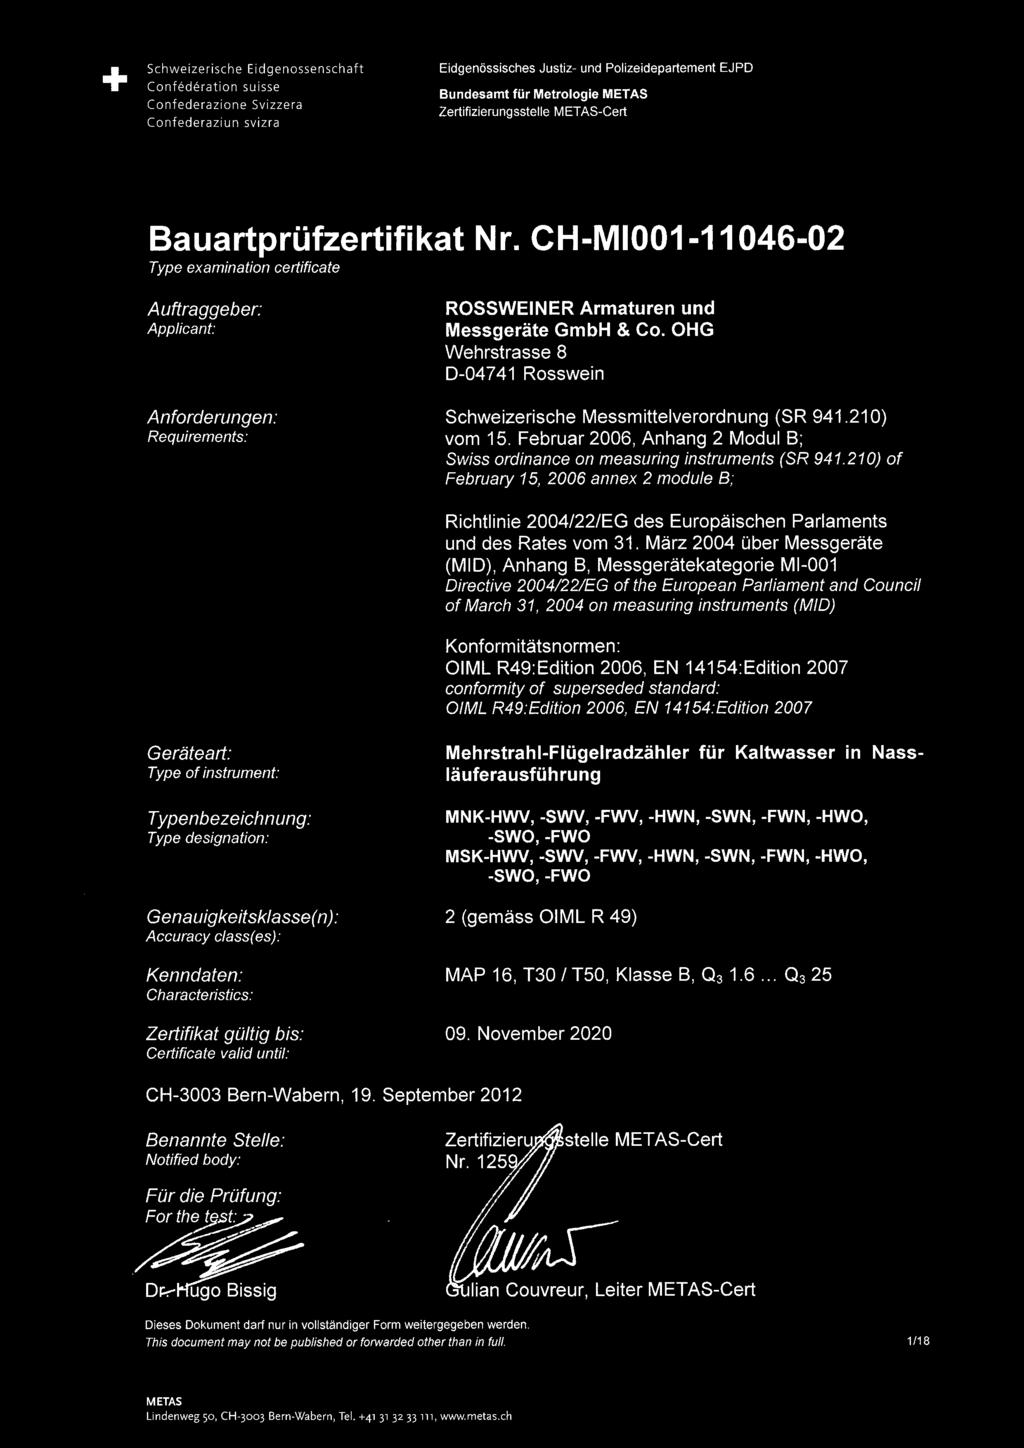 OHG Wehrstrasse 8 D-04741 Rosswein Anforderungen: Schweizerische Messmittelverordnung (SR 941.210) Requirements: vom 15.